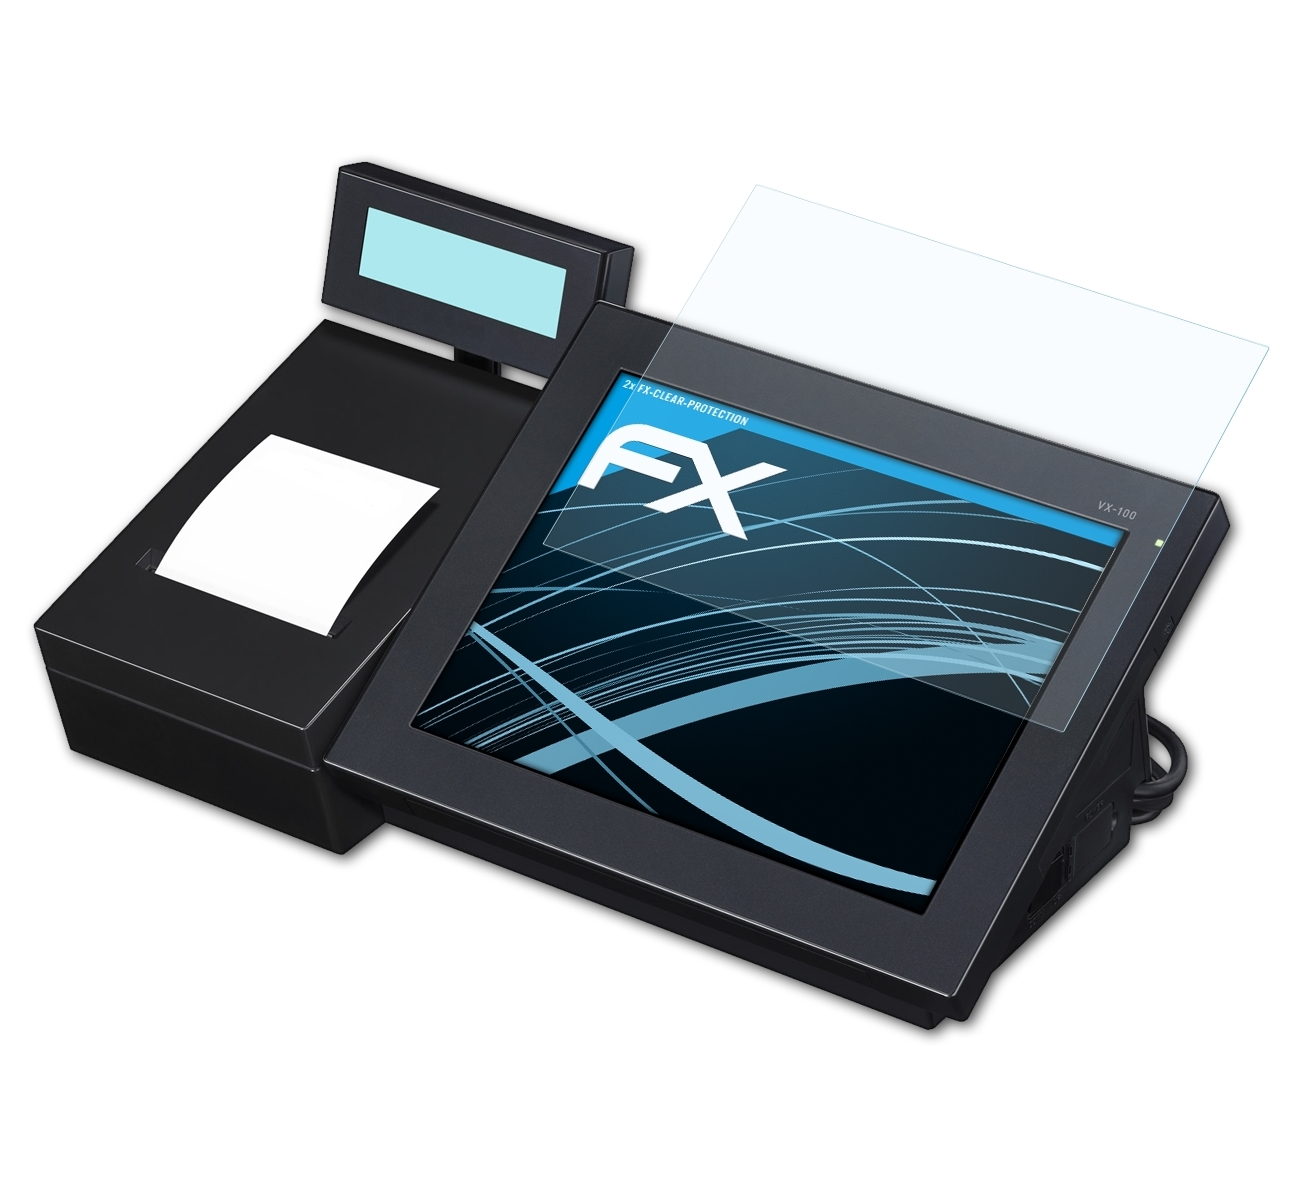 ATFOLIX 2x V-R100) FX-Clear Casio Displayschutz(für